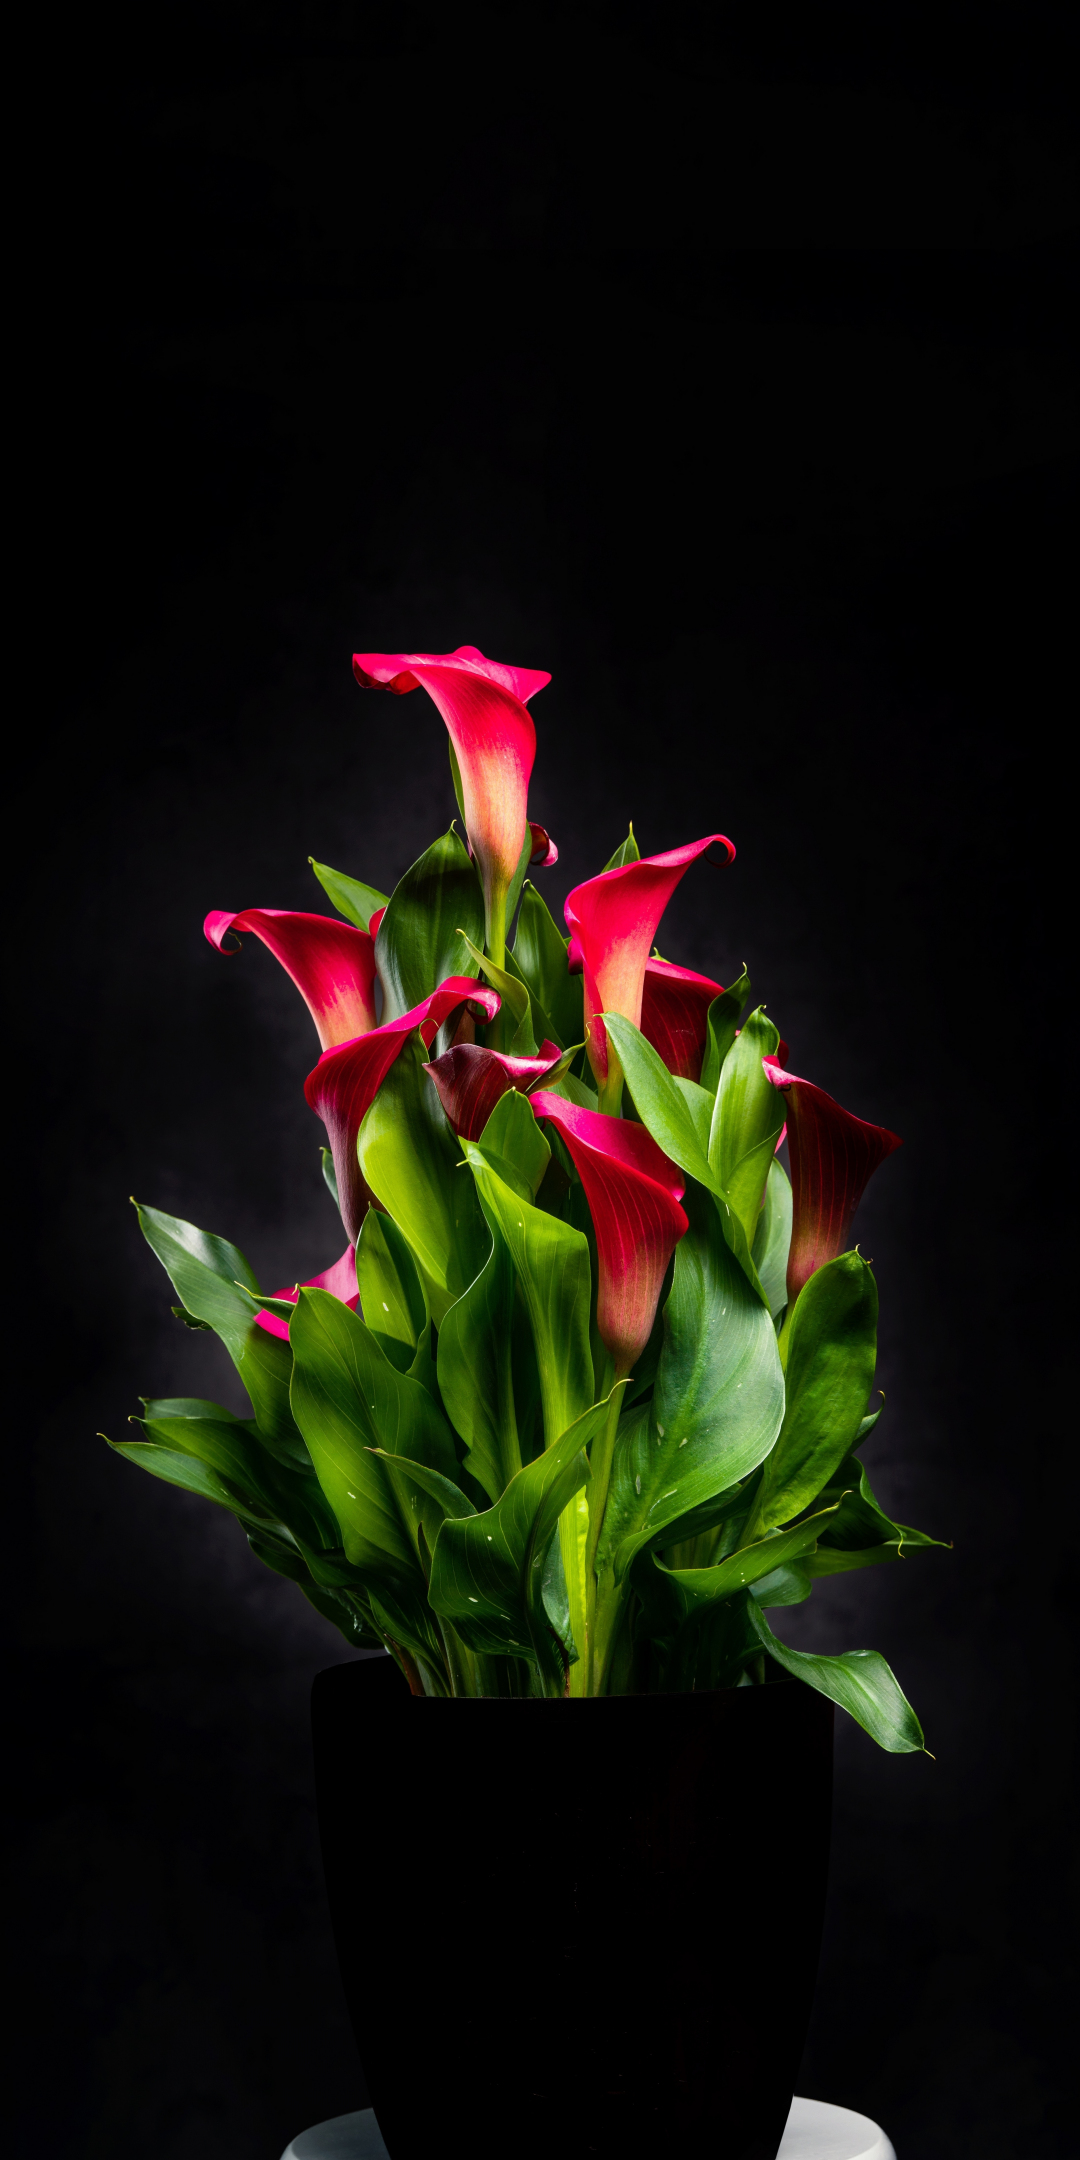 Floral vase, red Irises, portrait, 1080x2160 wallpaper